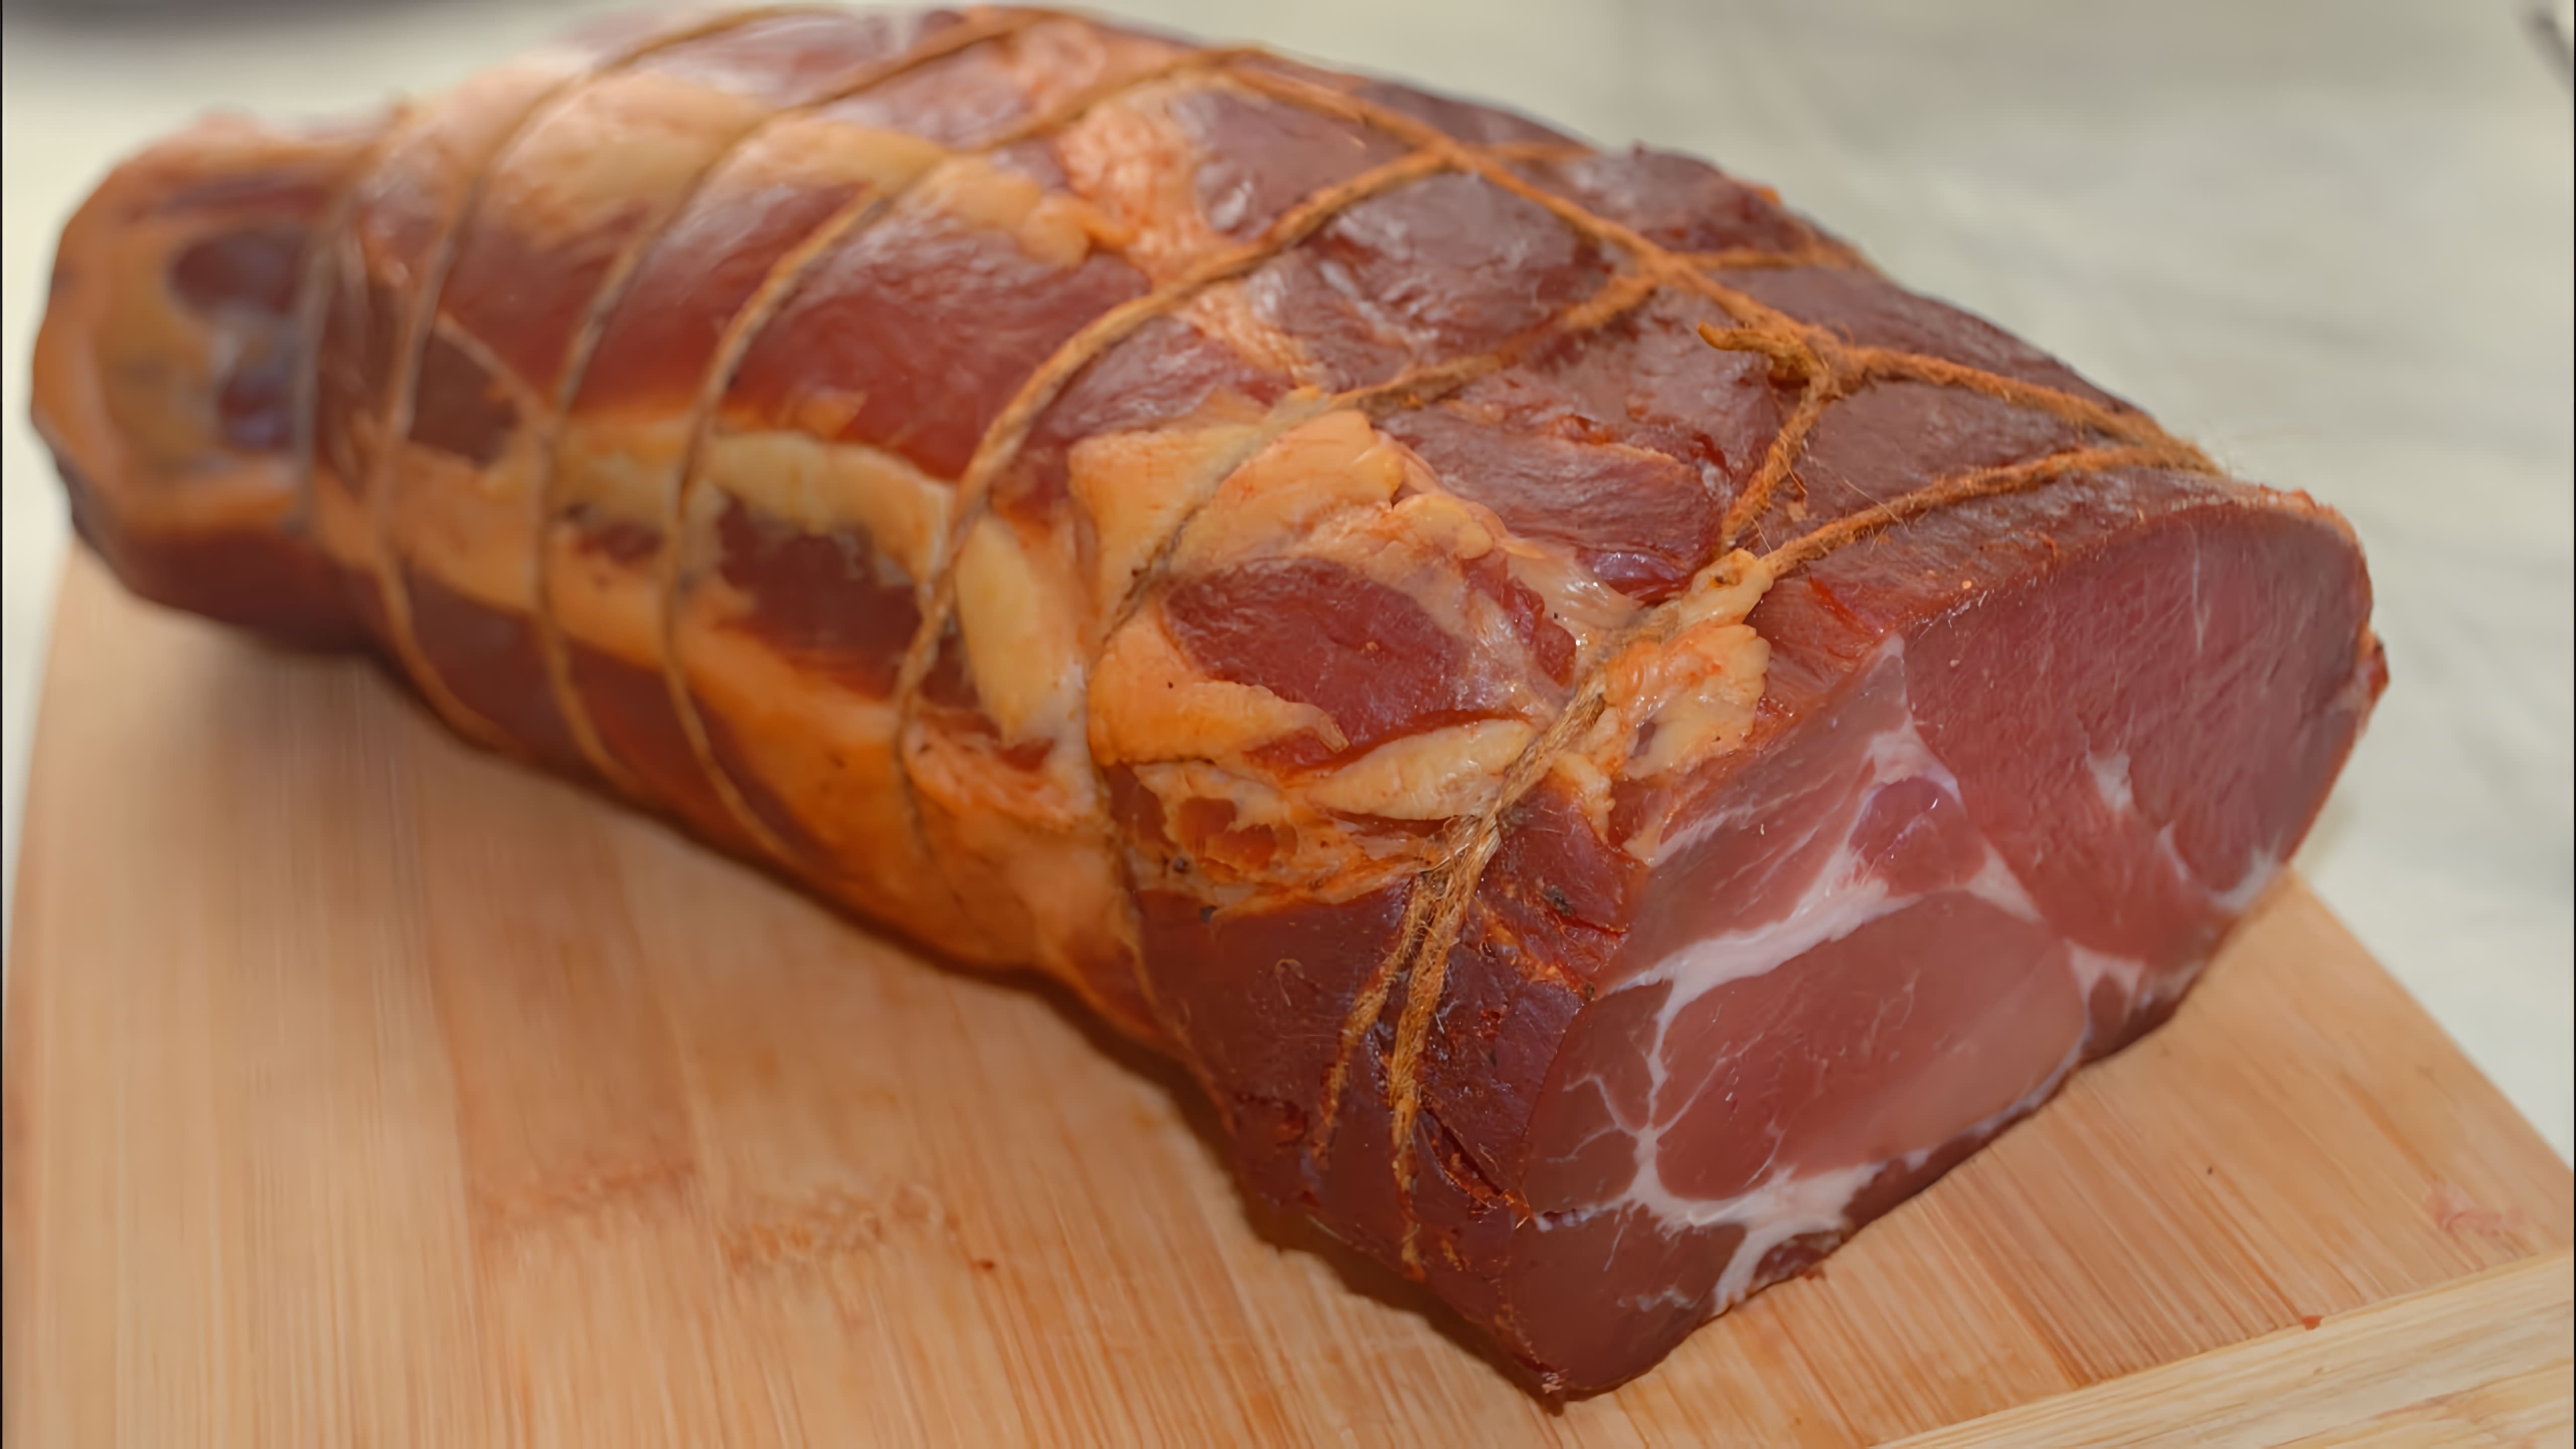 В данном видео демонстрируется процесс приготовления домашнего деликатеса - свиной шеи